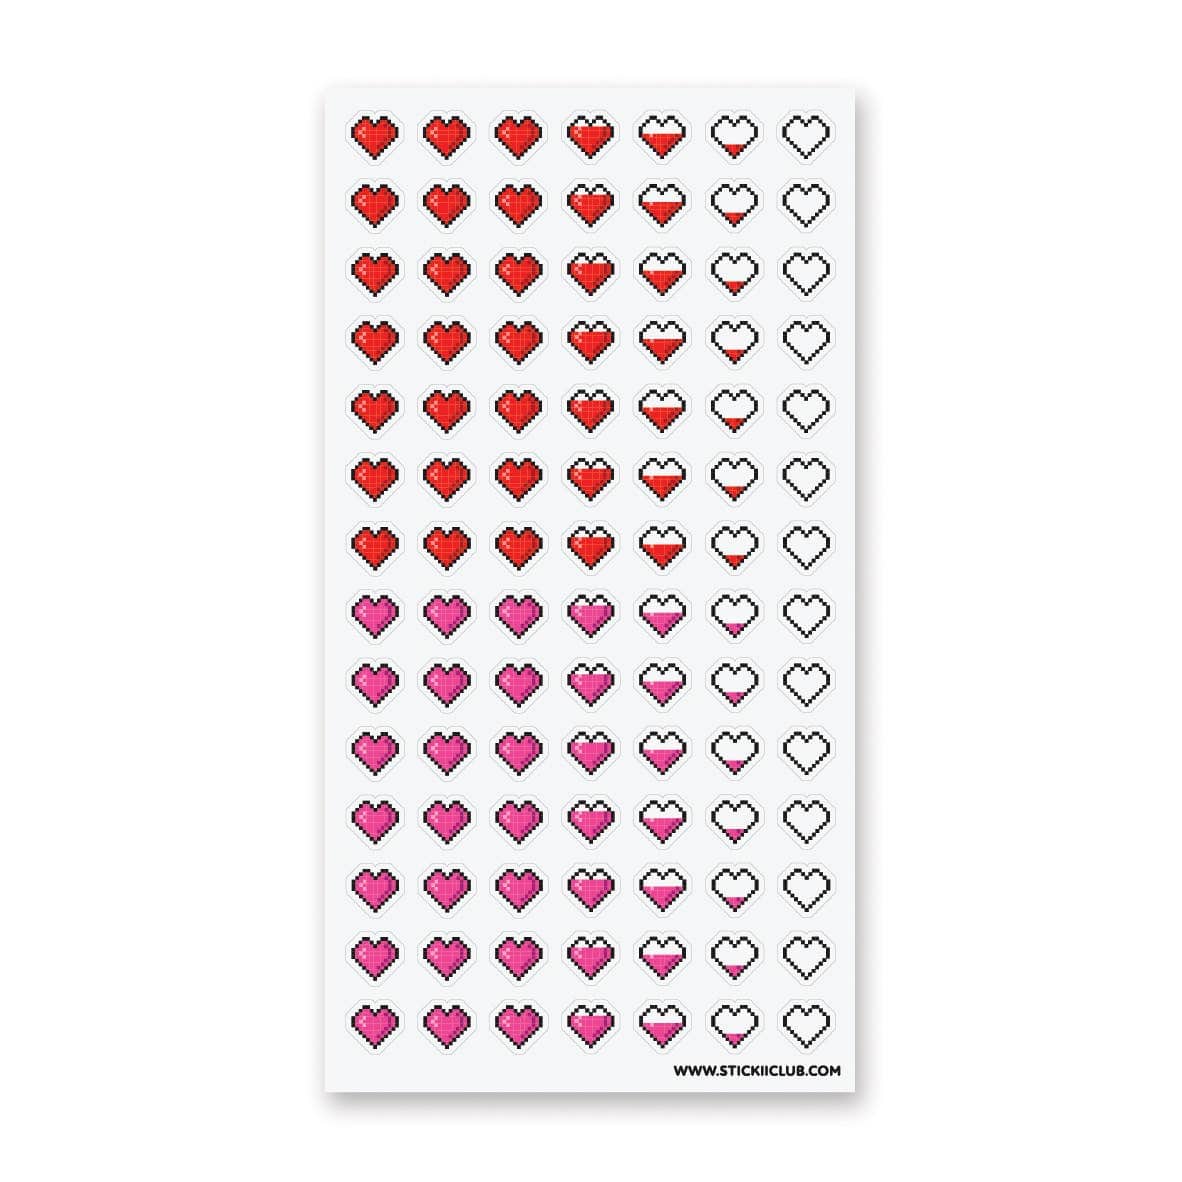 Pixel Hearts Sticker Sheet